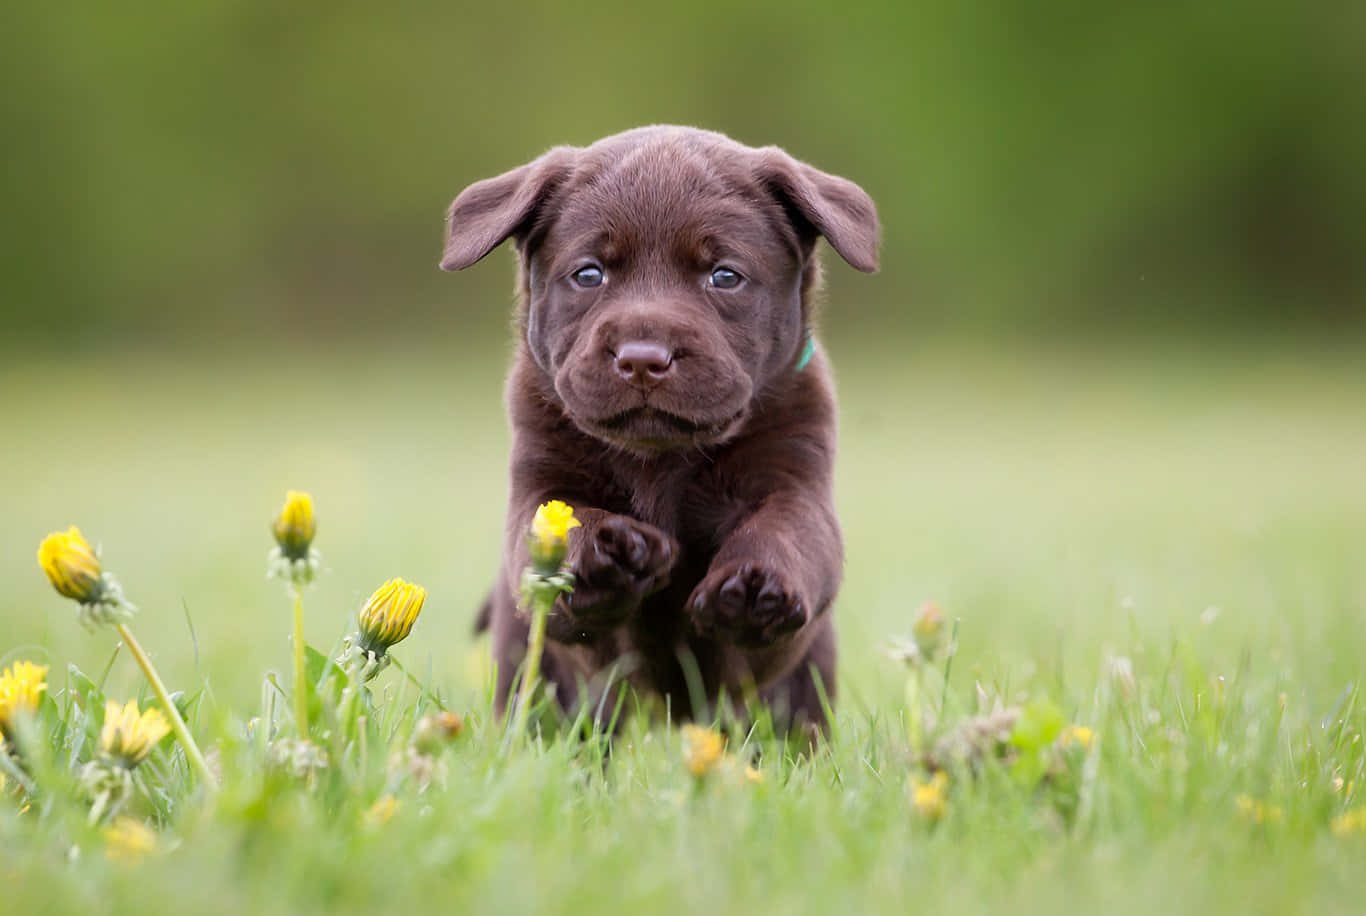 A Labrador Retriever Puppy Ready for Adventure